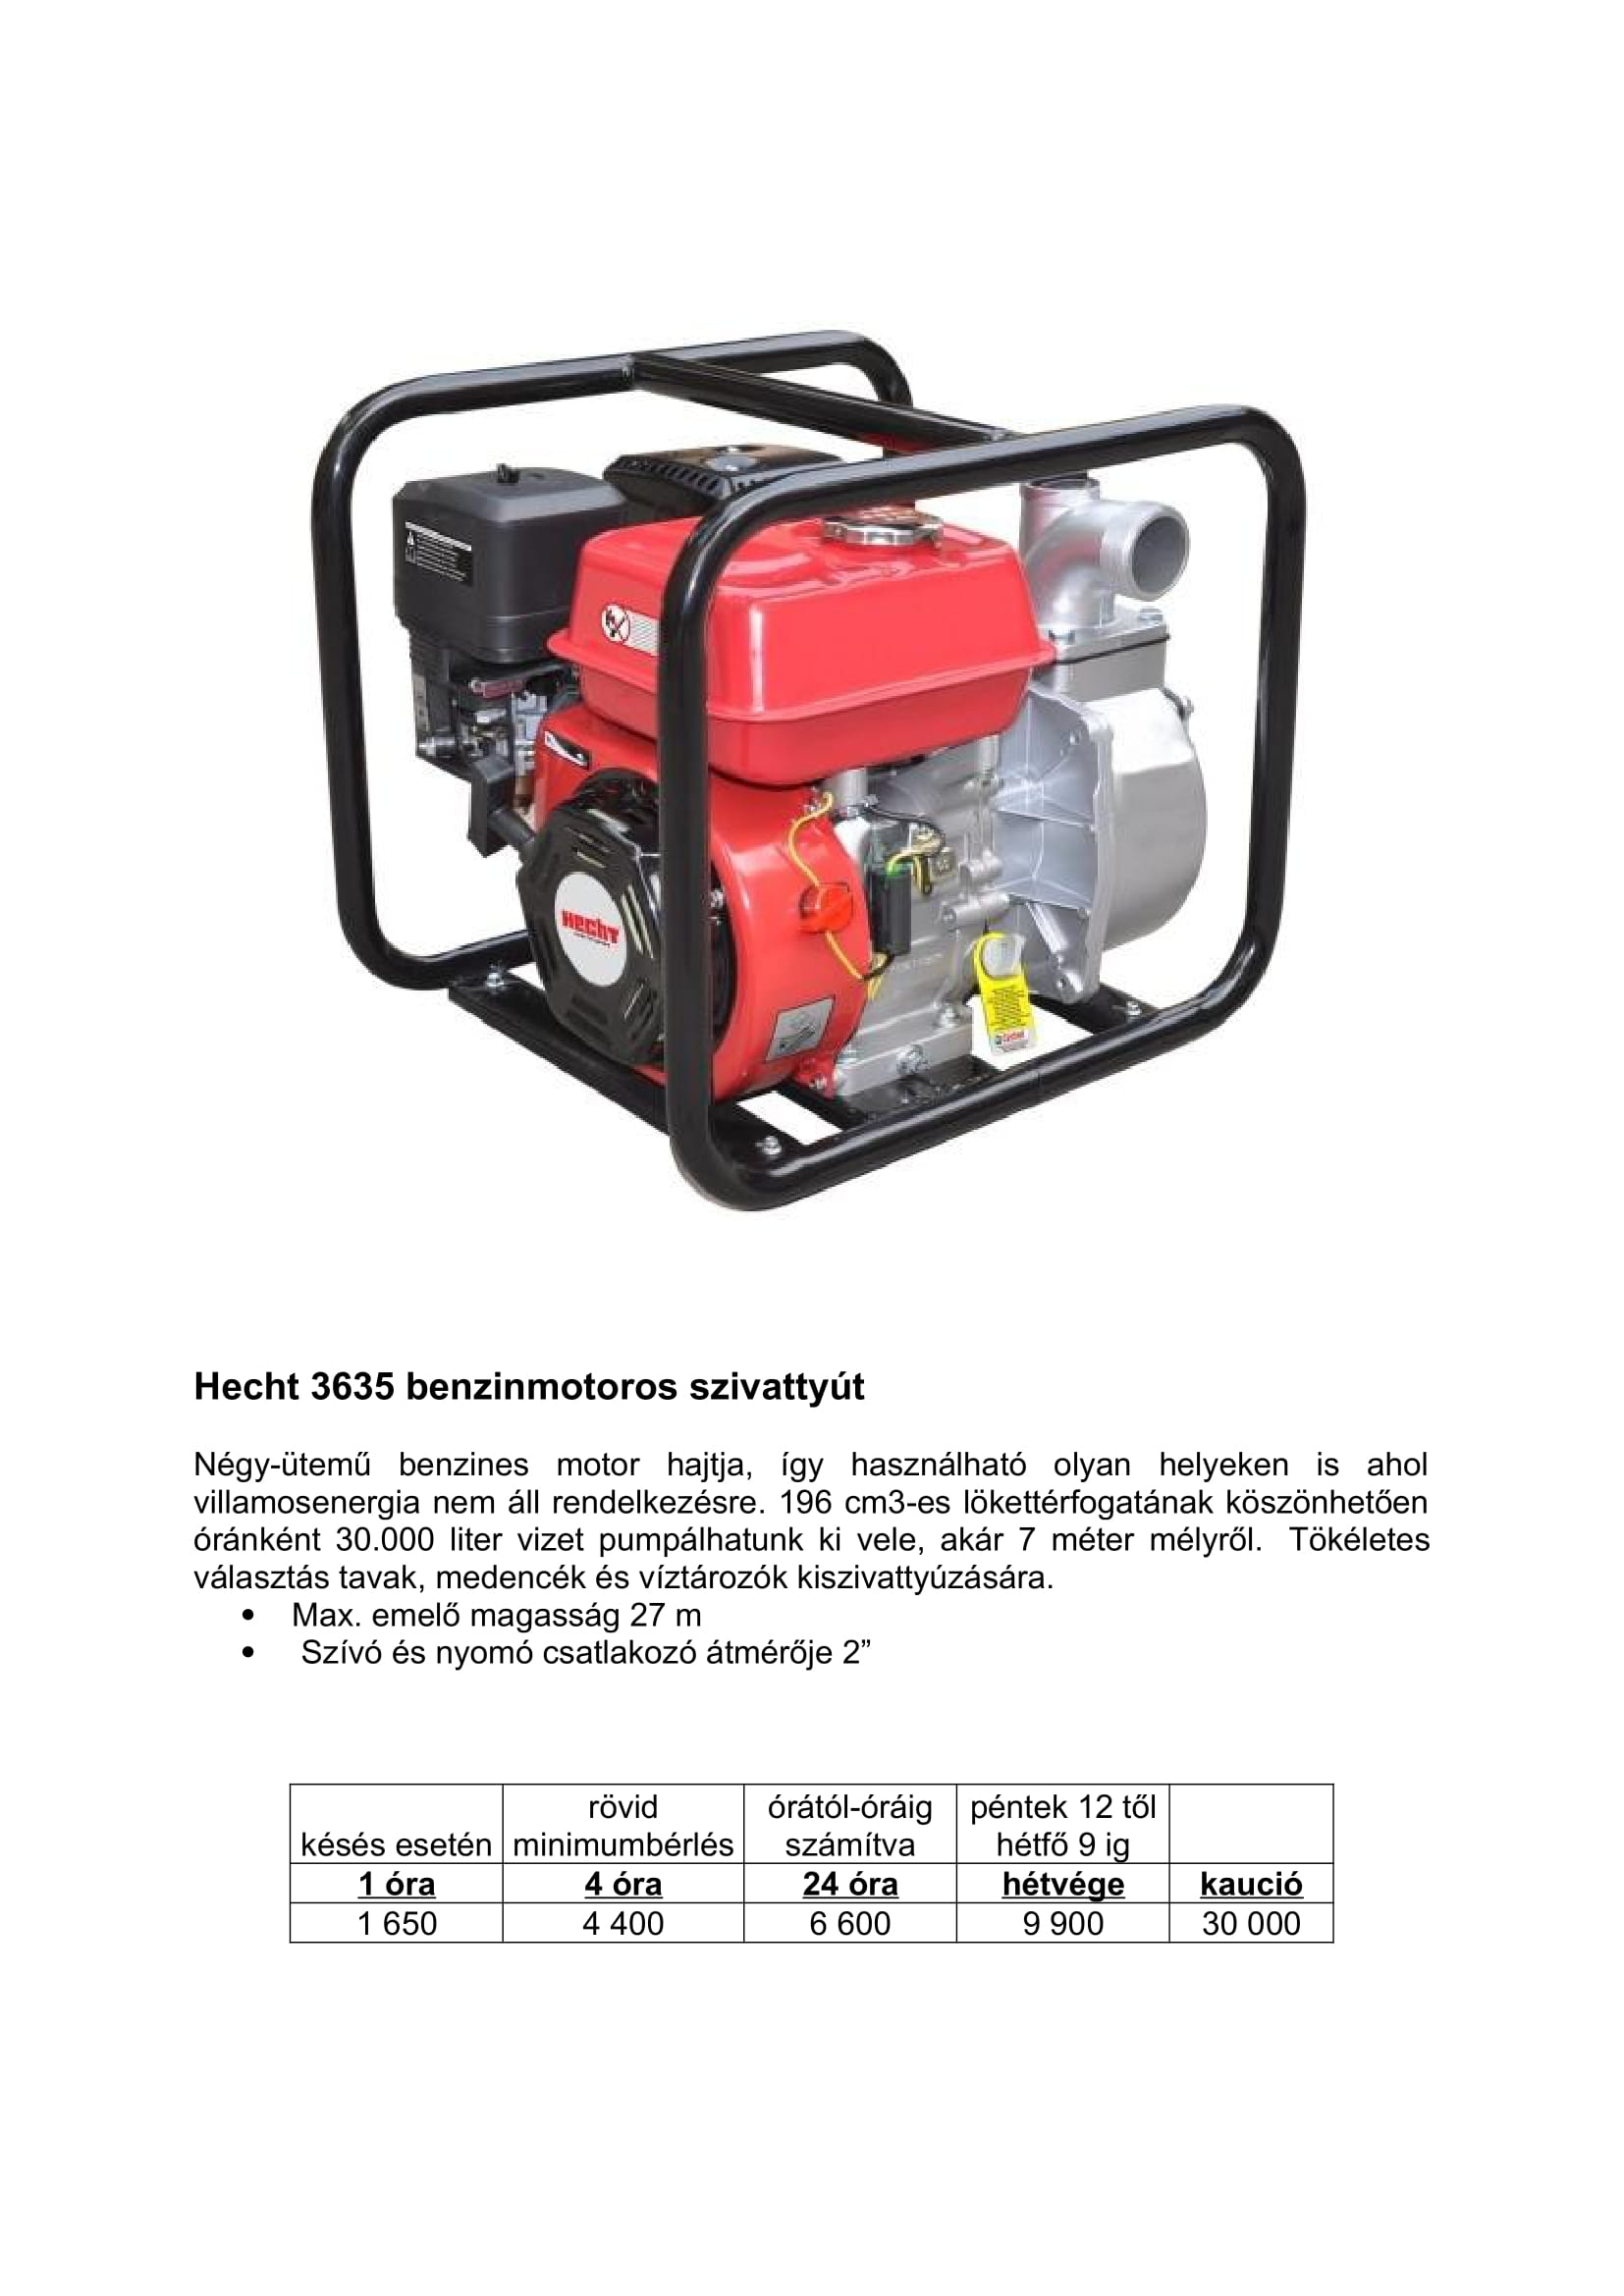 HECHT 3635 Benzinmotoros szivattyú-1